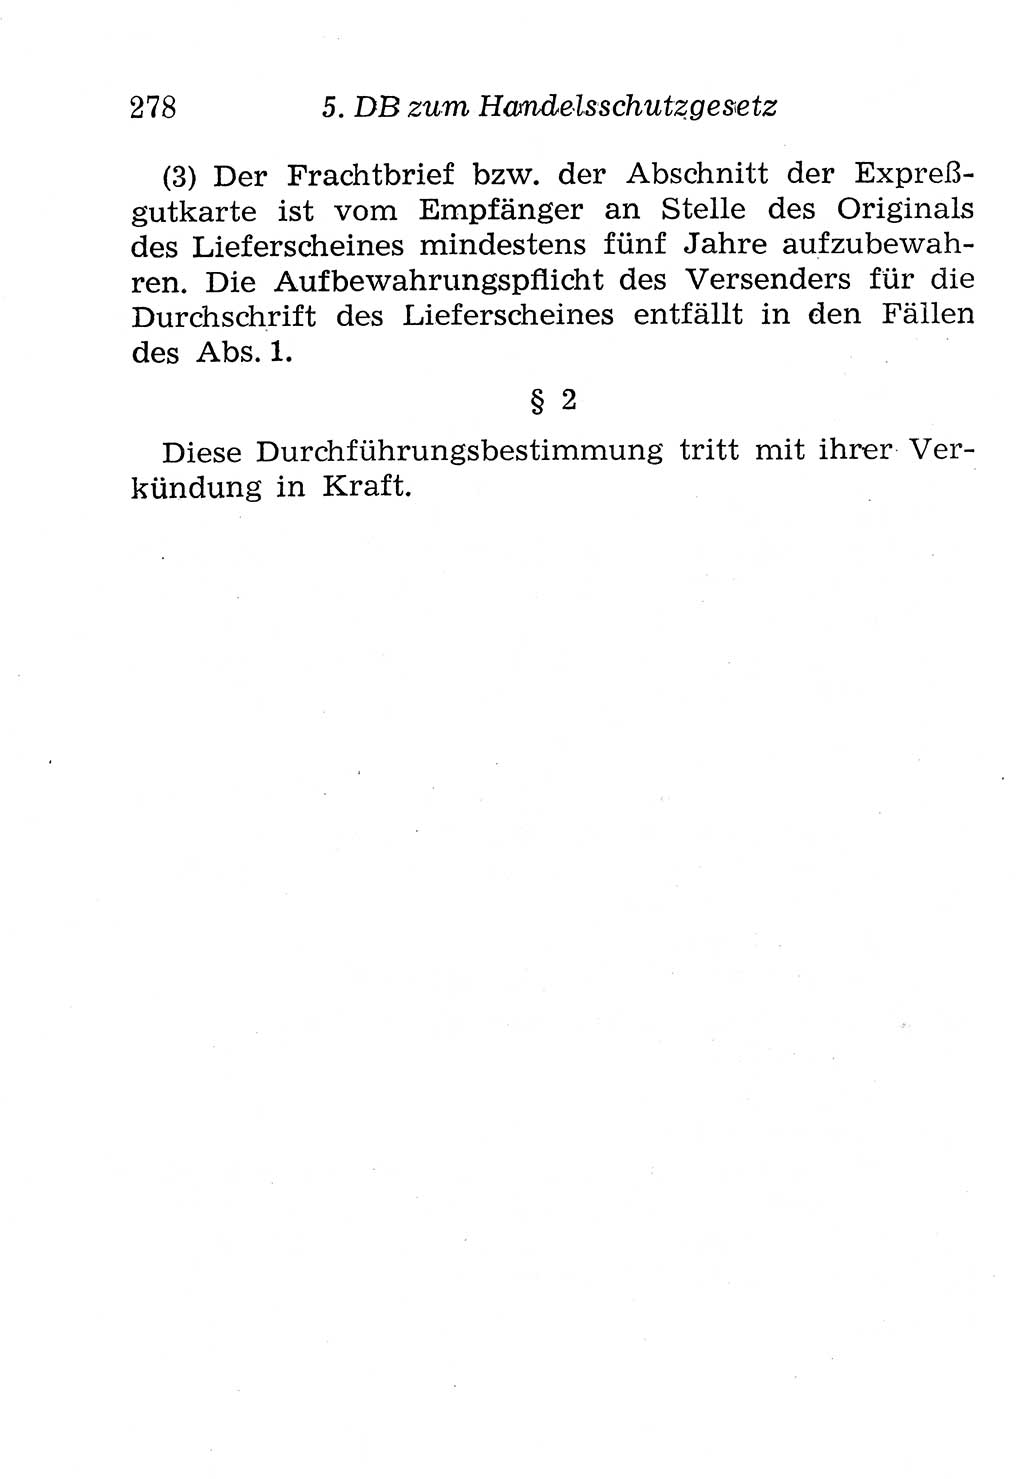 Strafgesetzbuch (StGB) und andere Strafgesetze [Deutsche Demokratische Republik (DDR)] 1958, Seite 278 (StGB Strafges. DDR 1958, S. 278)